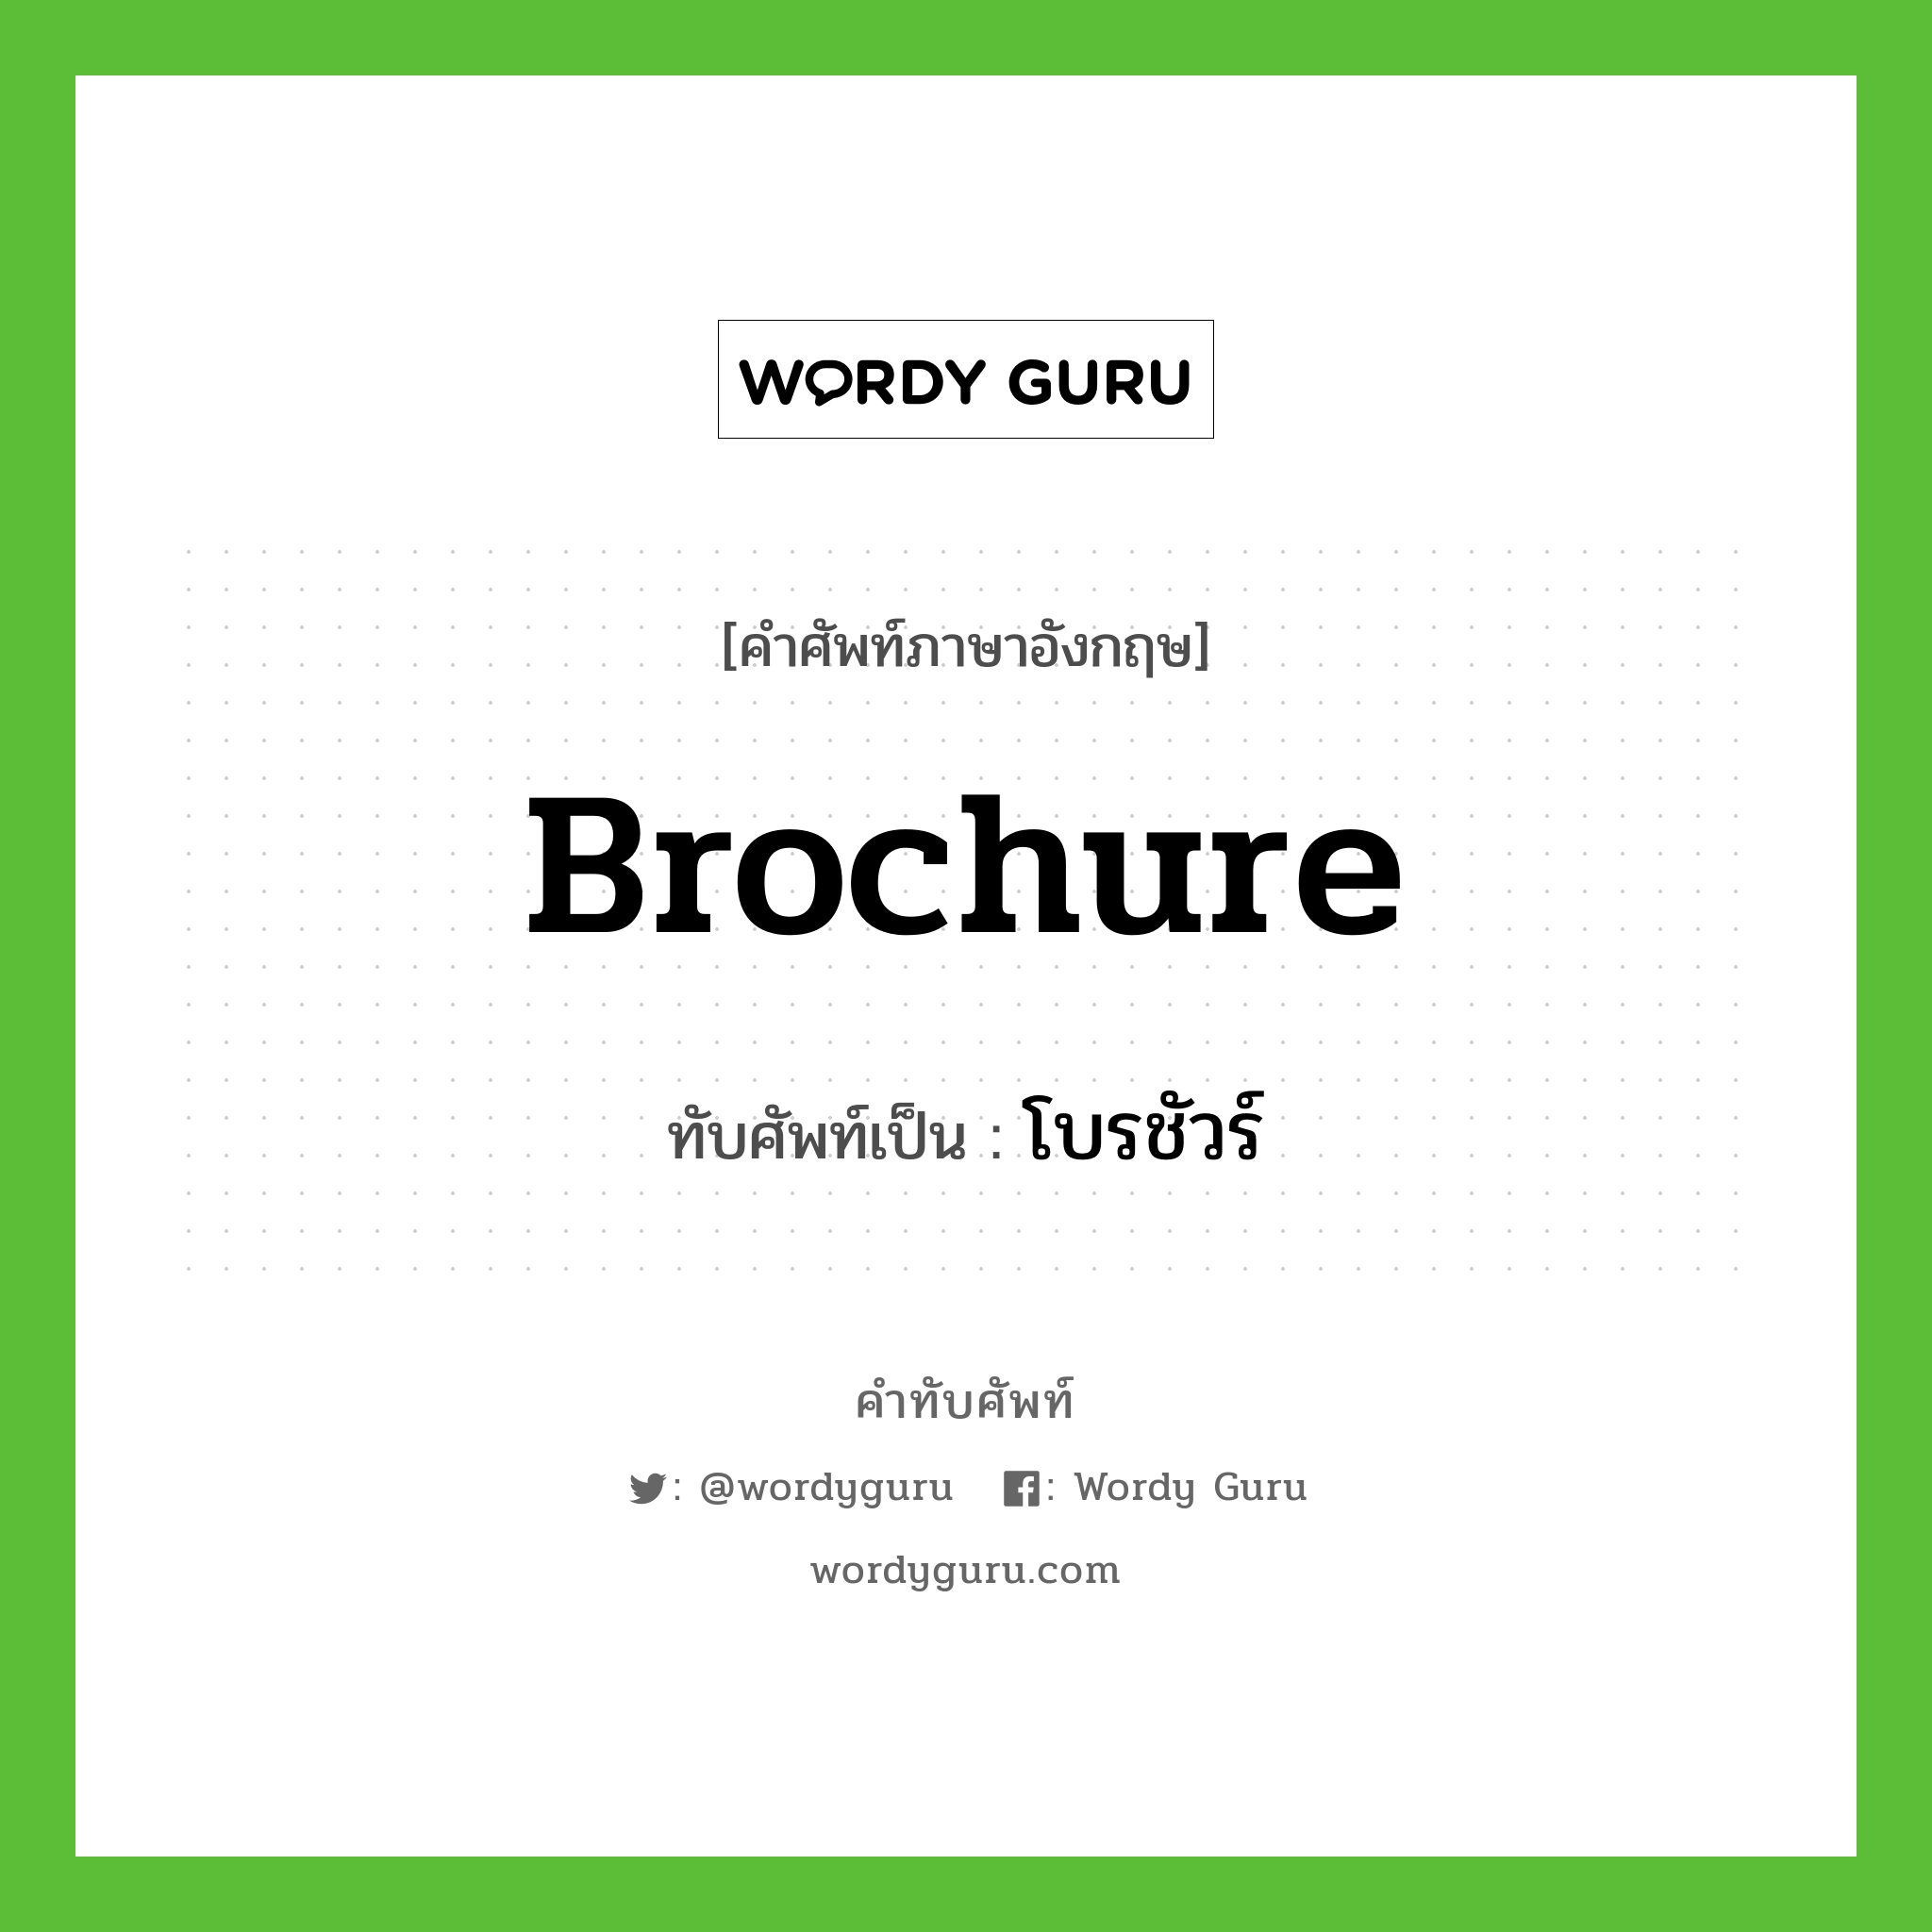 Brochure เขียนเป็นคำไทยว่าอะไร?, คำศัพท์ภาษาอังกฤษ Brochure ทับศัพท์เป็น โบรชัวร์